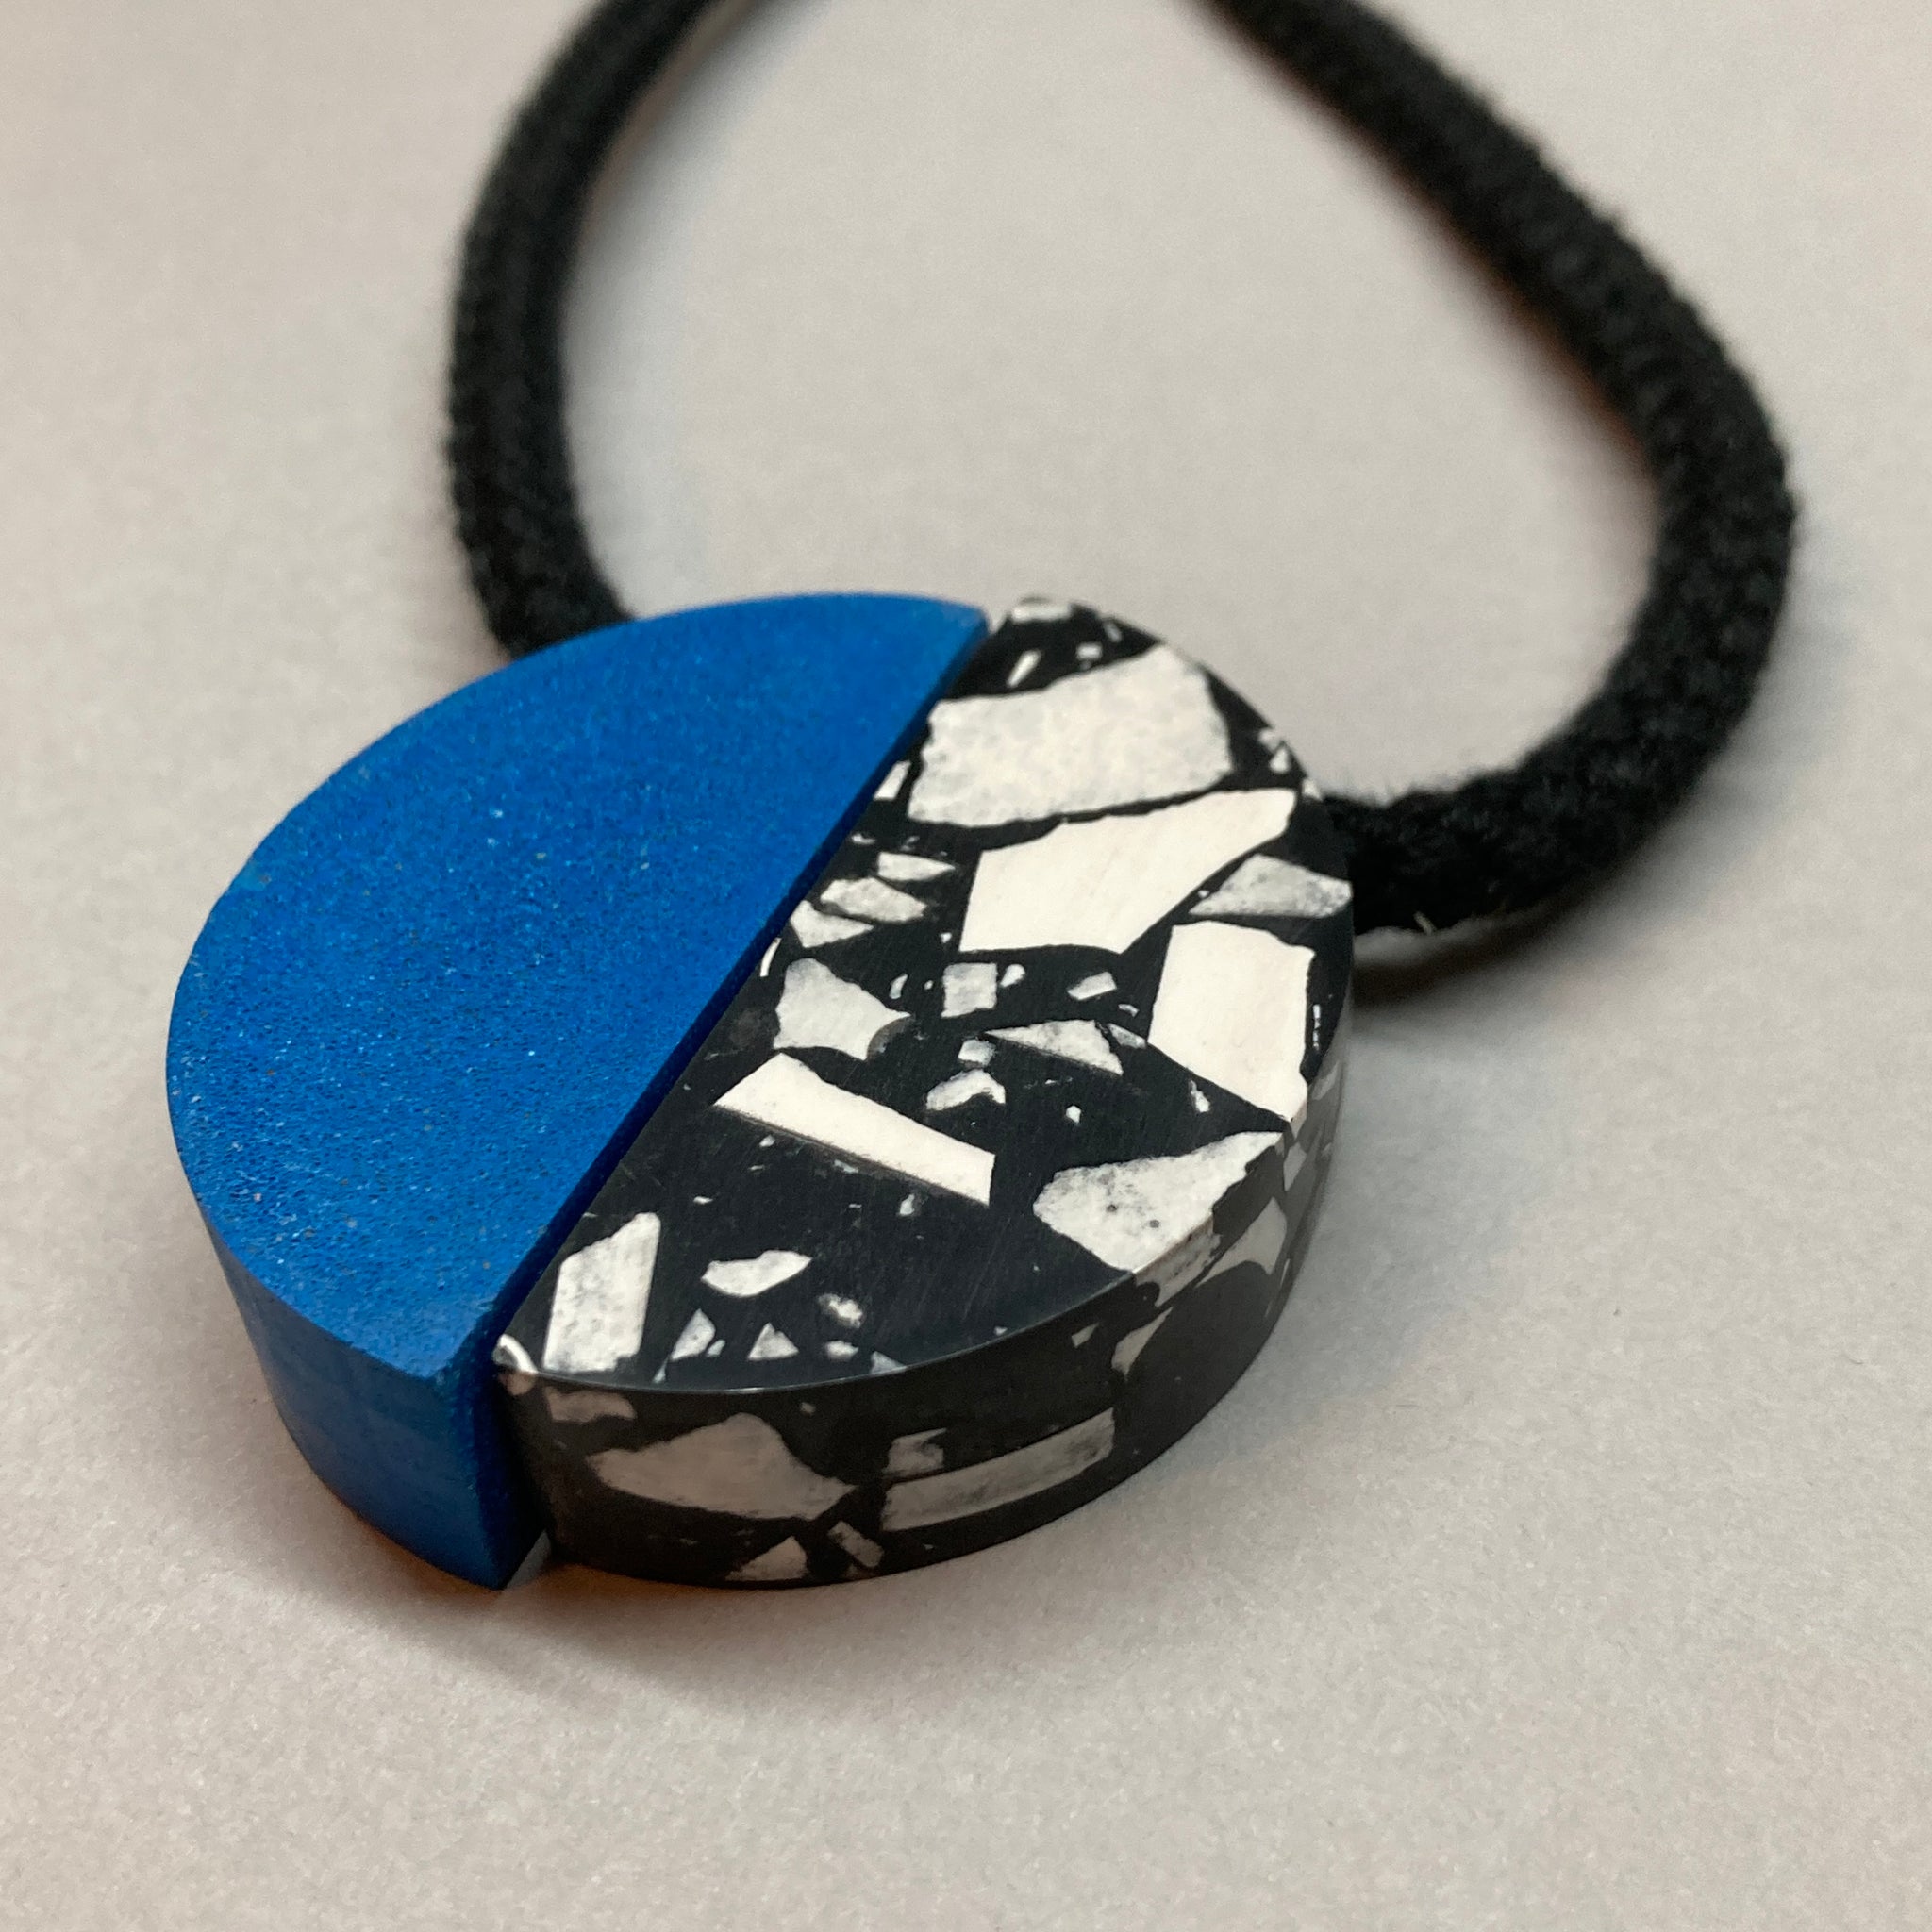 Sample blue/speckled necklace